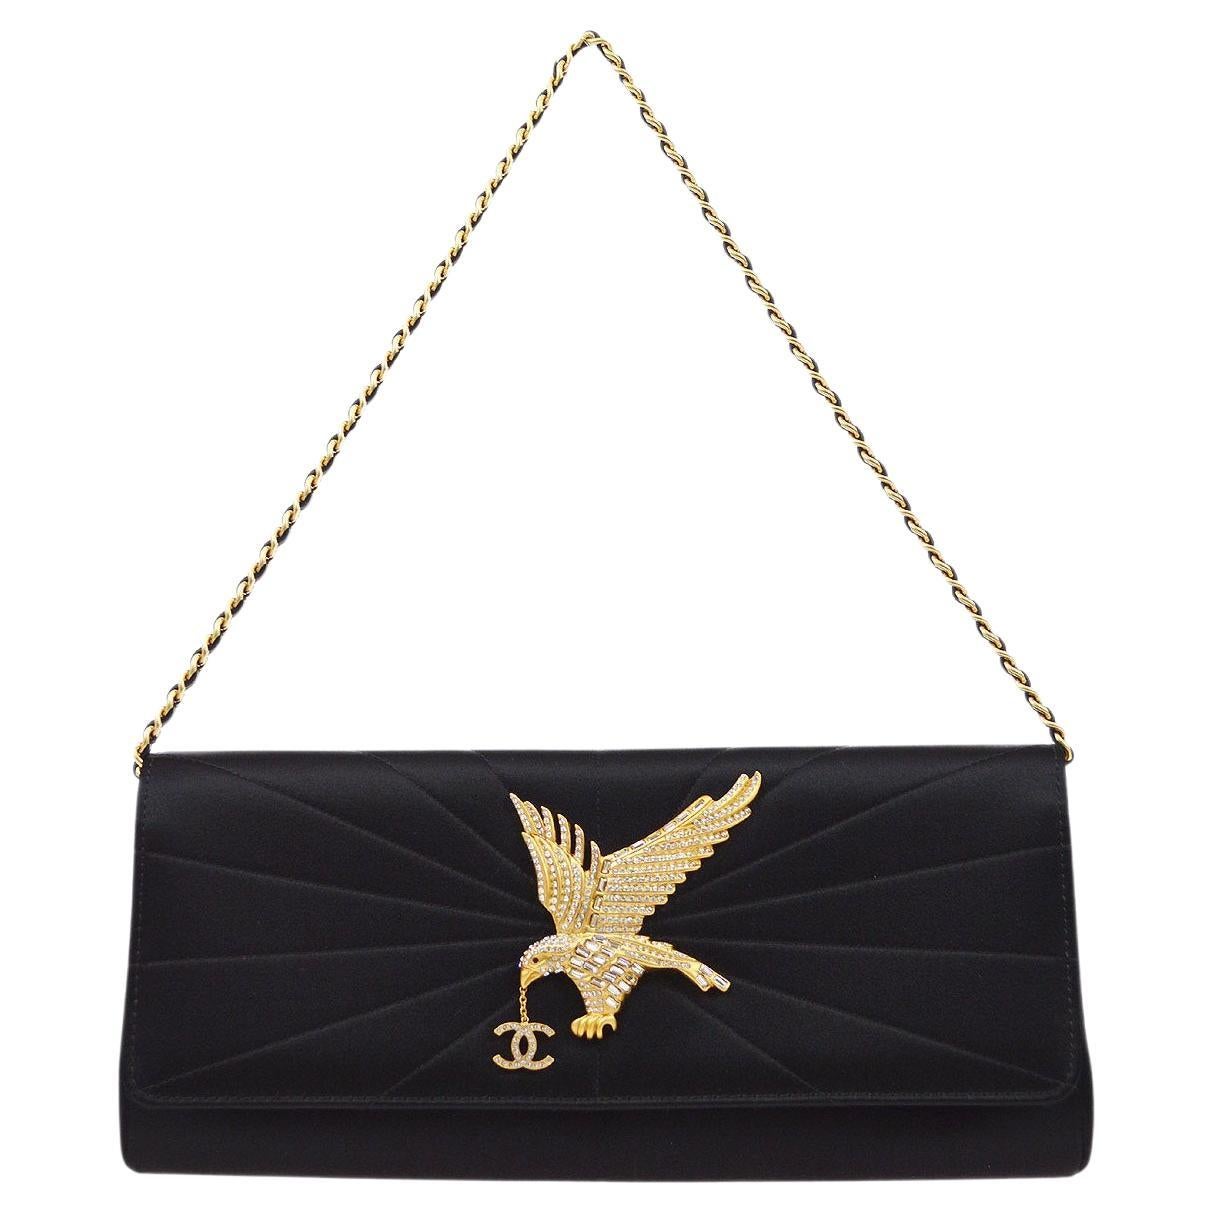 Chanel New Super Rare CC Jewel Eagle Flap Bag